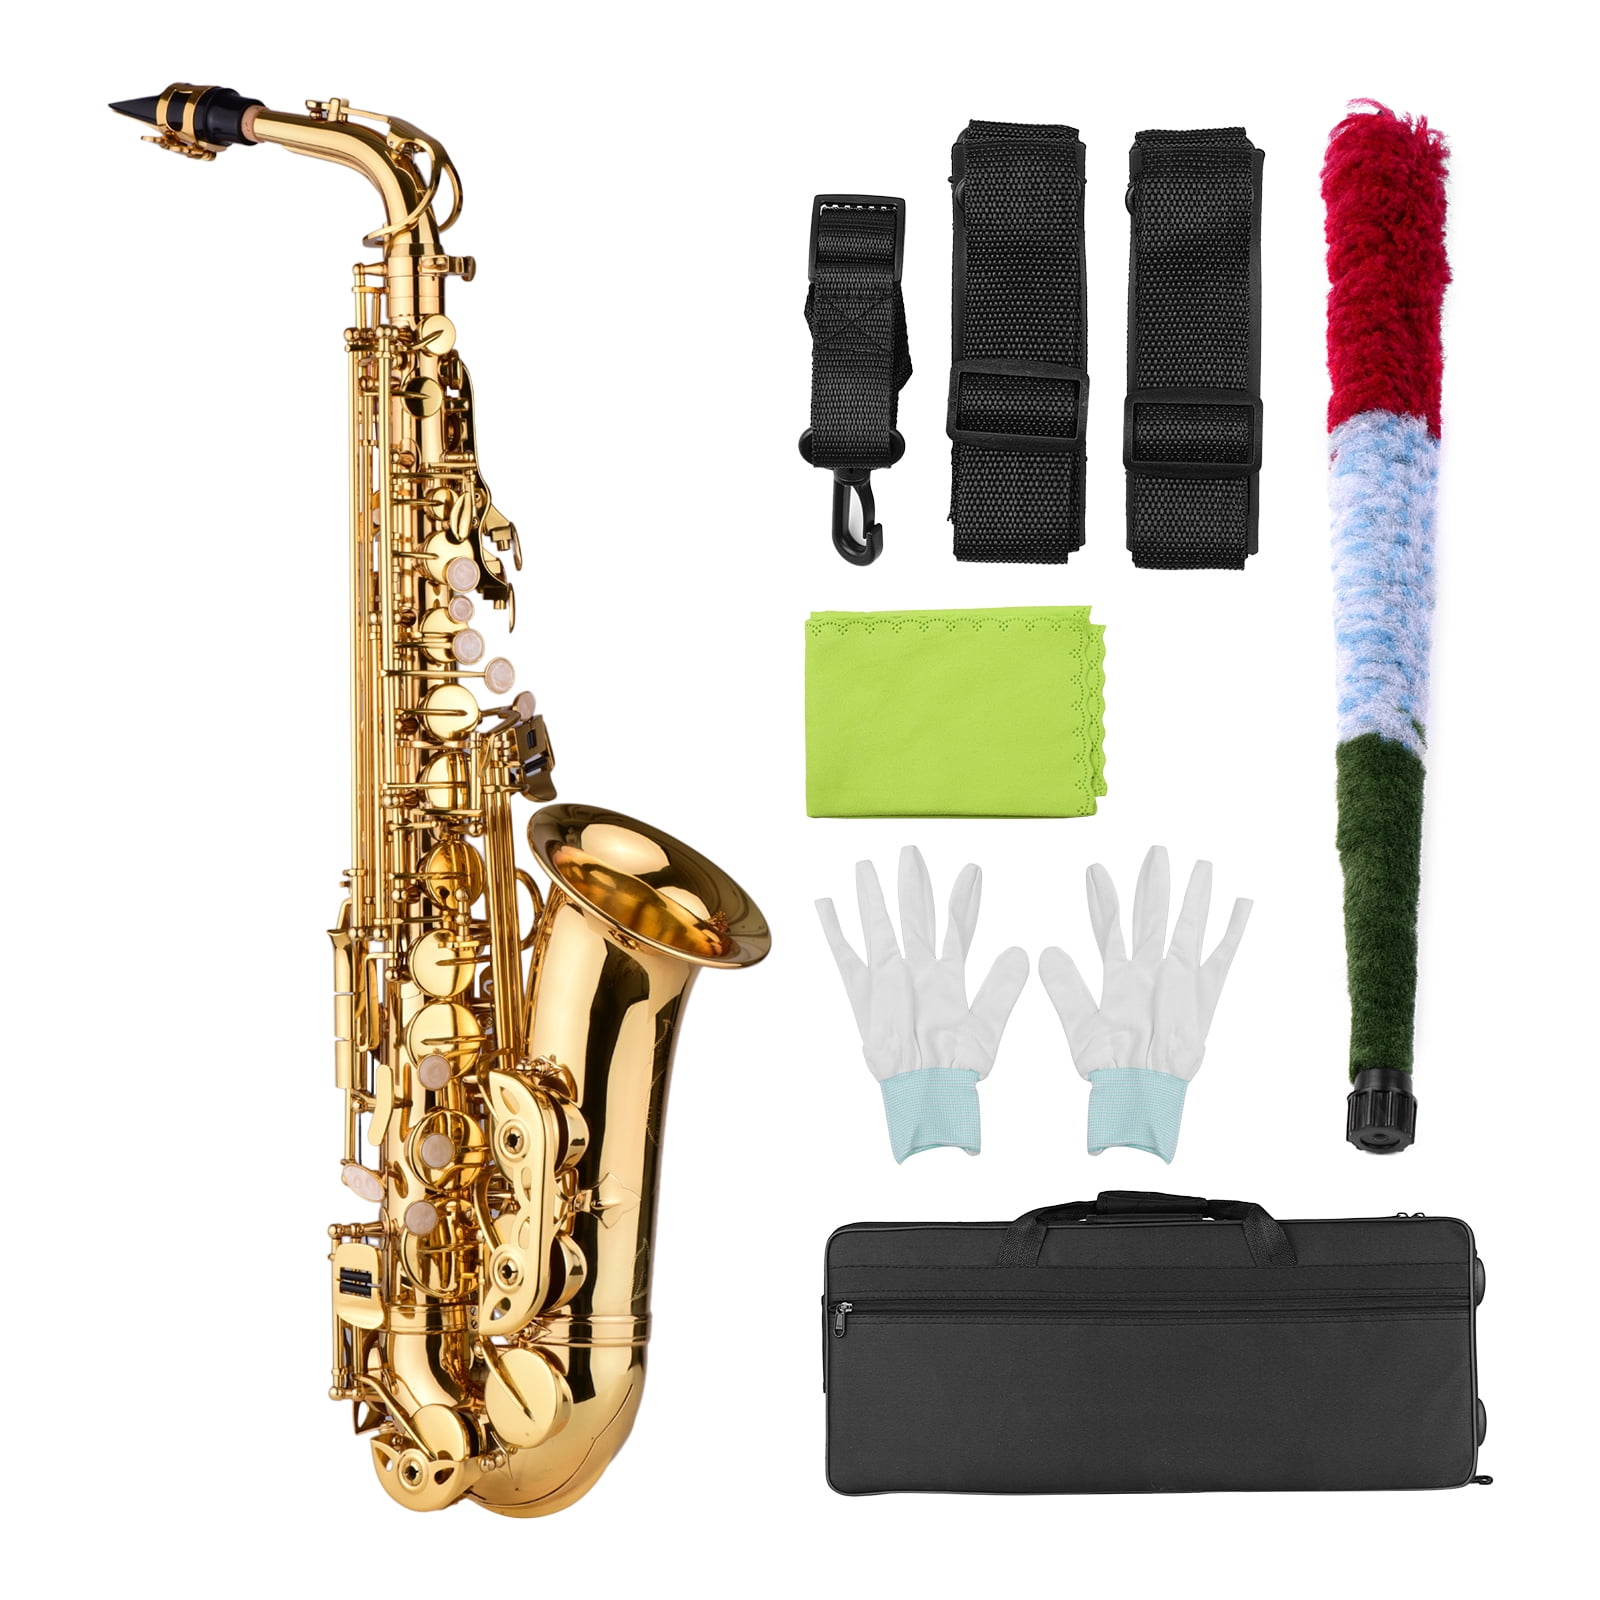 Dioche kit d'entretien pour saxophone Kit de nettoyage pour